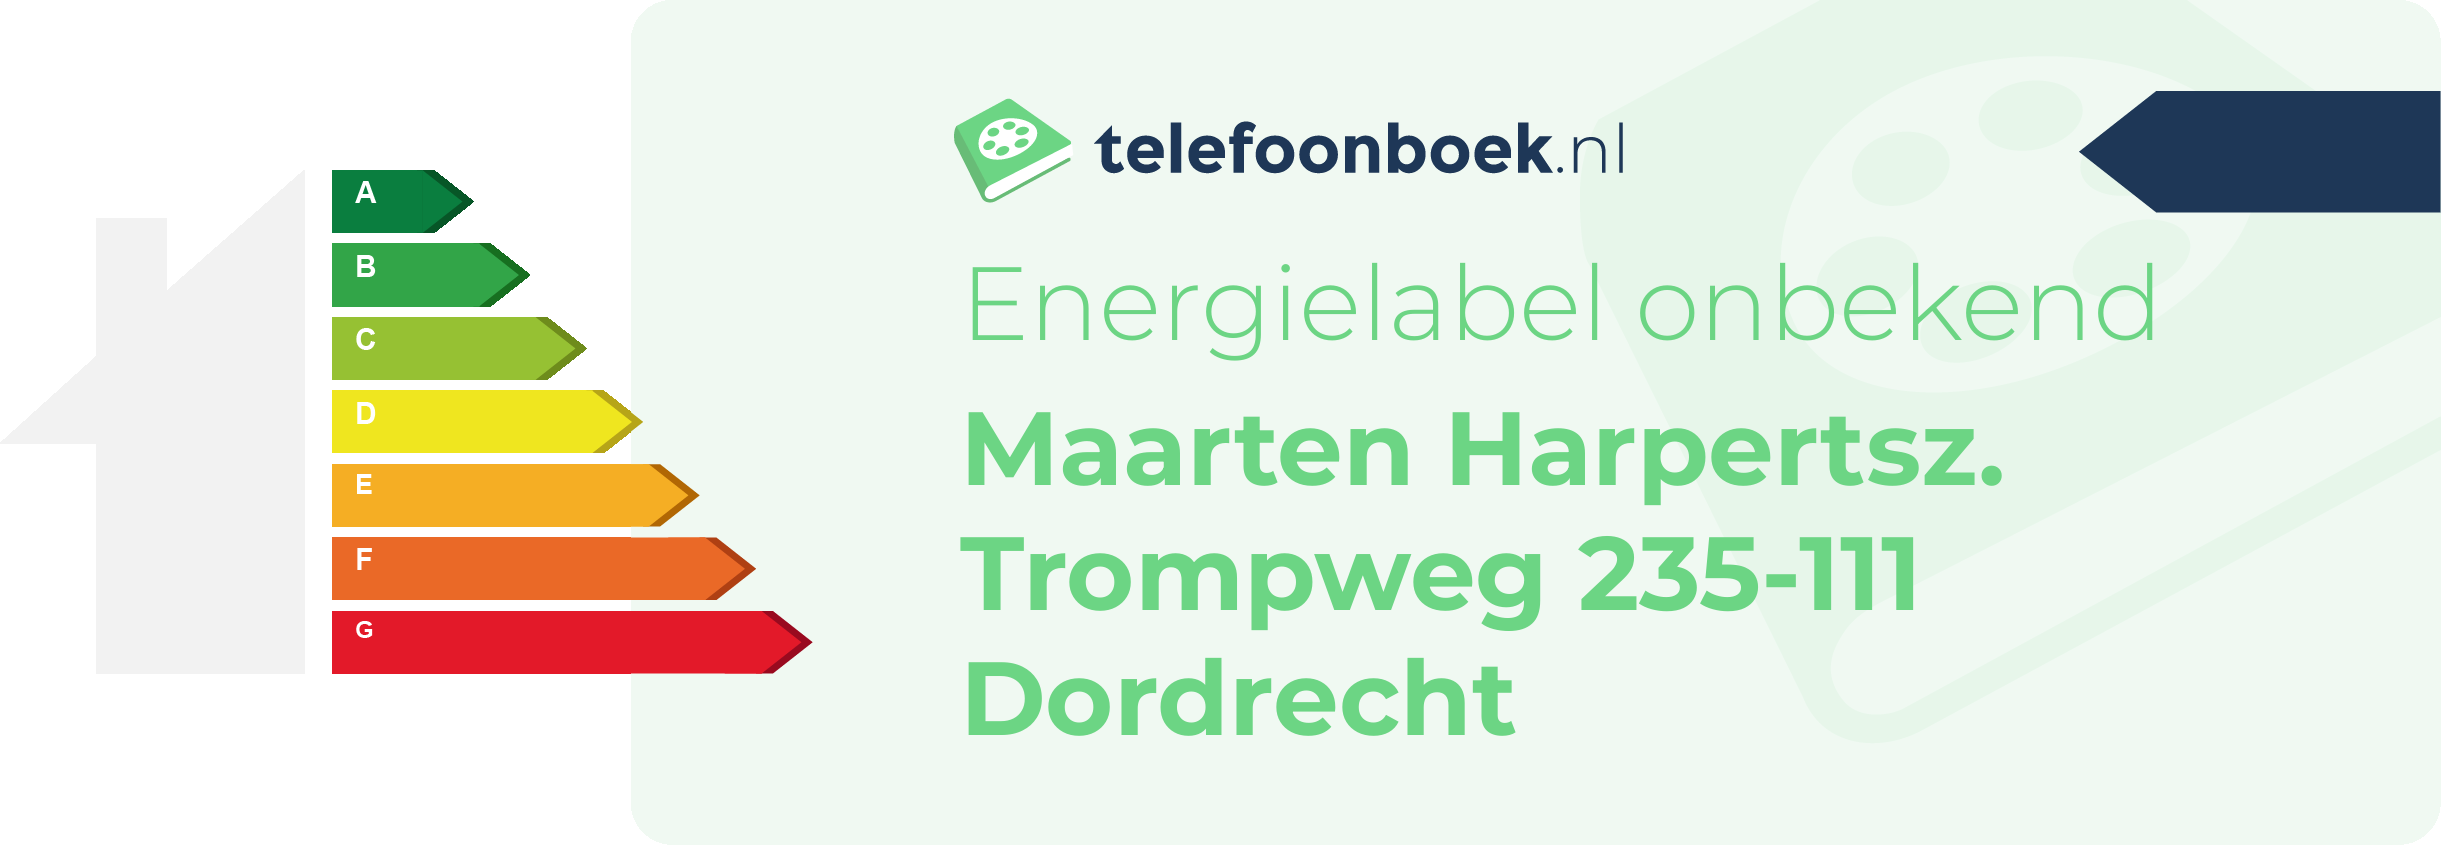 Energielabel Maarten Harpertsz. Trompweg 235-111 Dordrecht